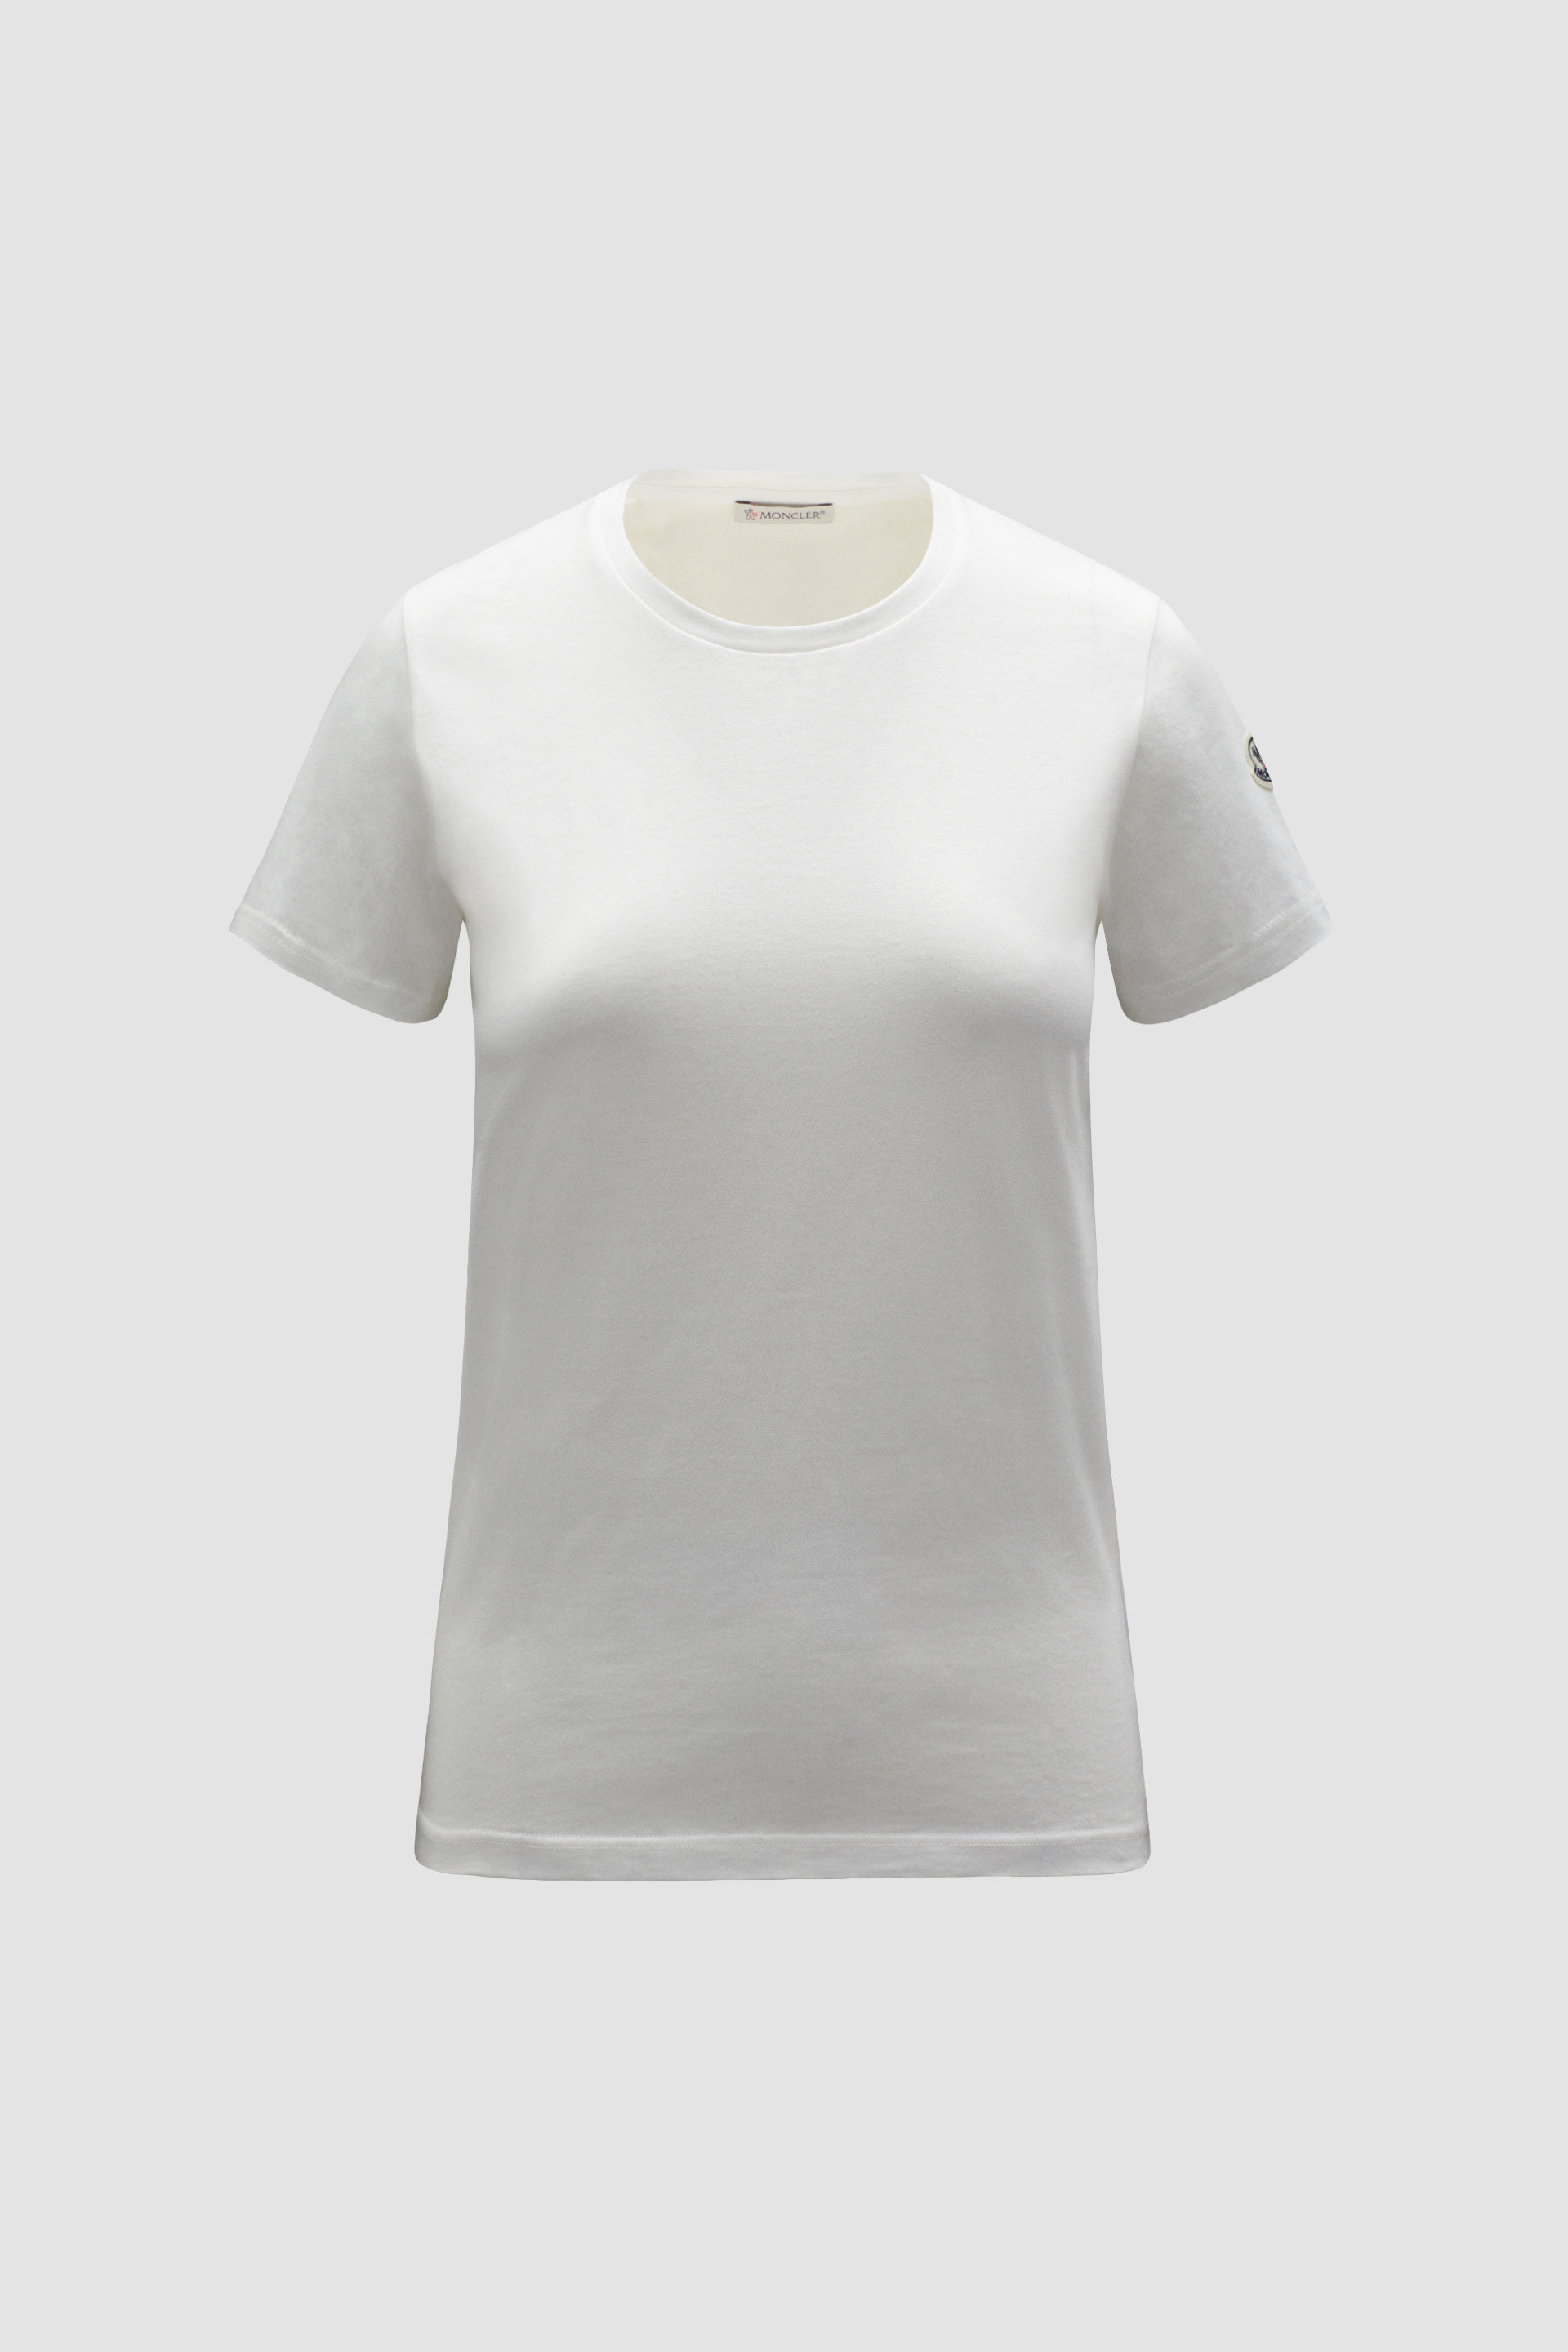 オフホワイト Tシャツ : トップ＆Tシャツ 向けの レディース 